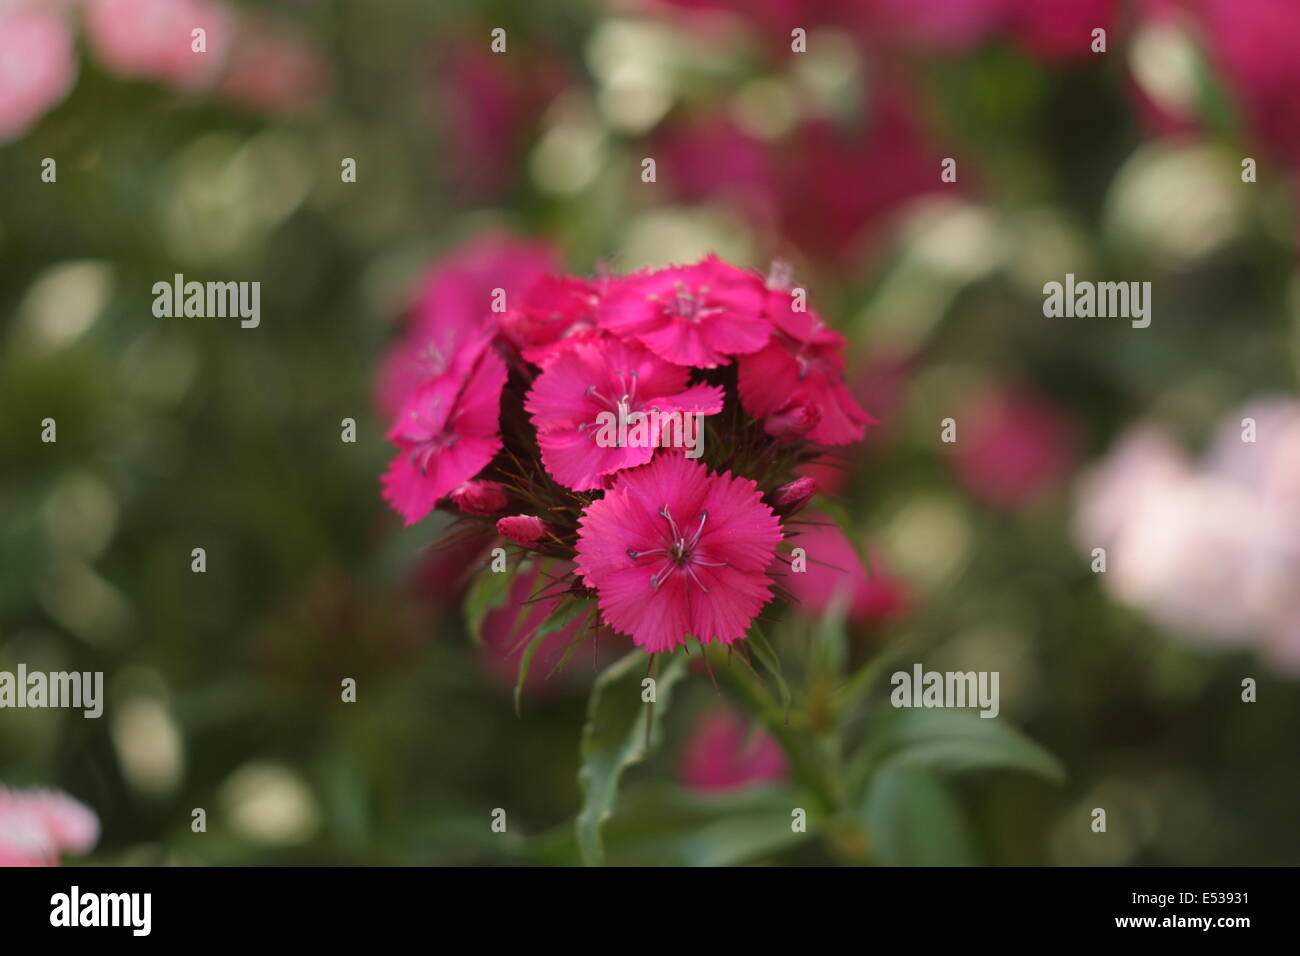 Sweet William flowers, Dianthus barbatus close-up. Stock Photo